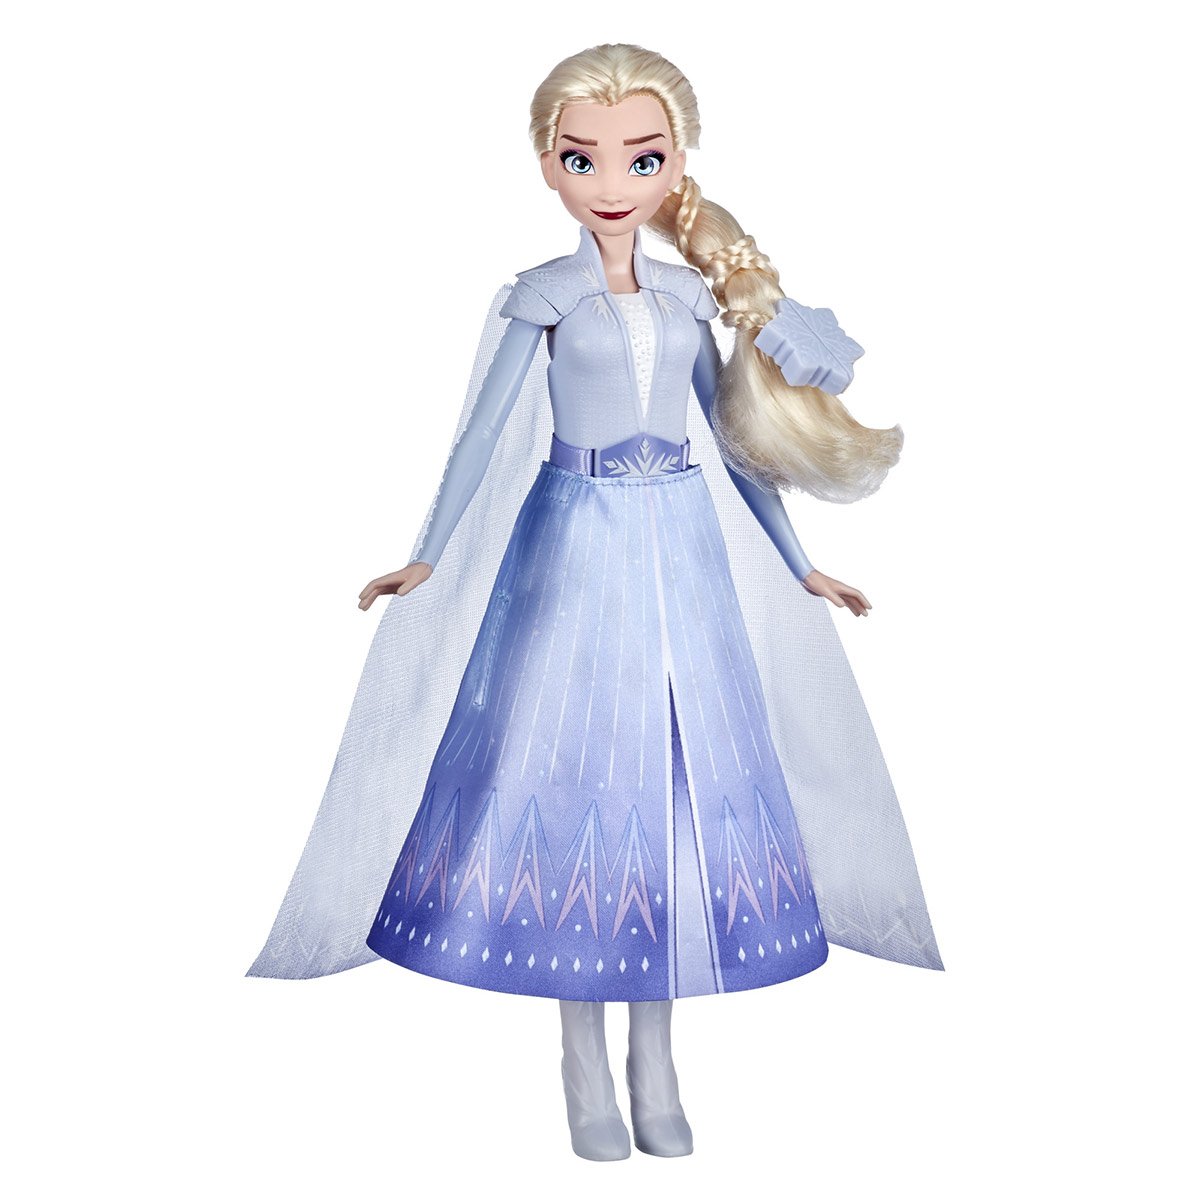 Recréer le look d'Elsa la reine des neiges